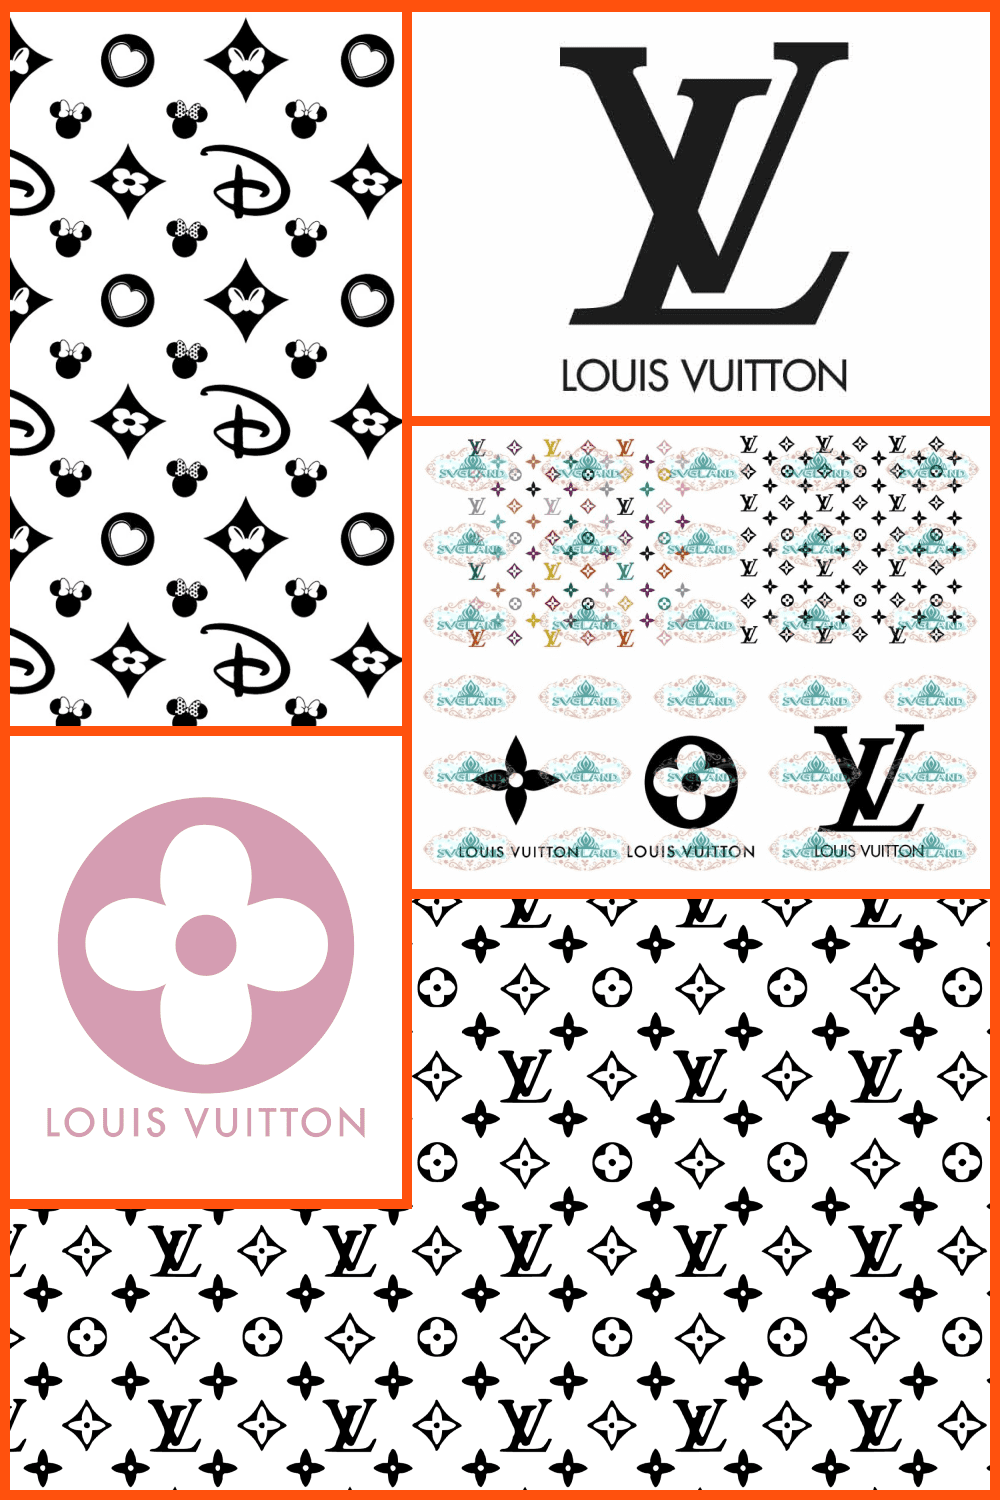 Louis Vuitton SVG Images Pinterest.